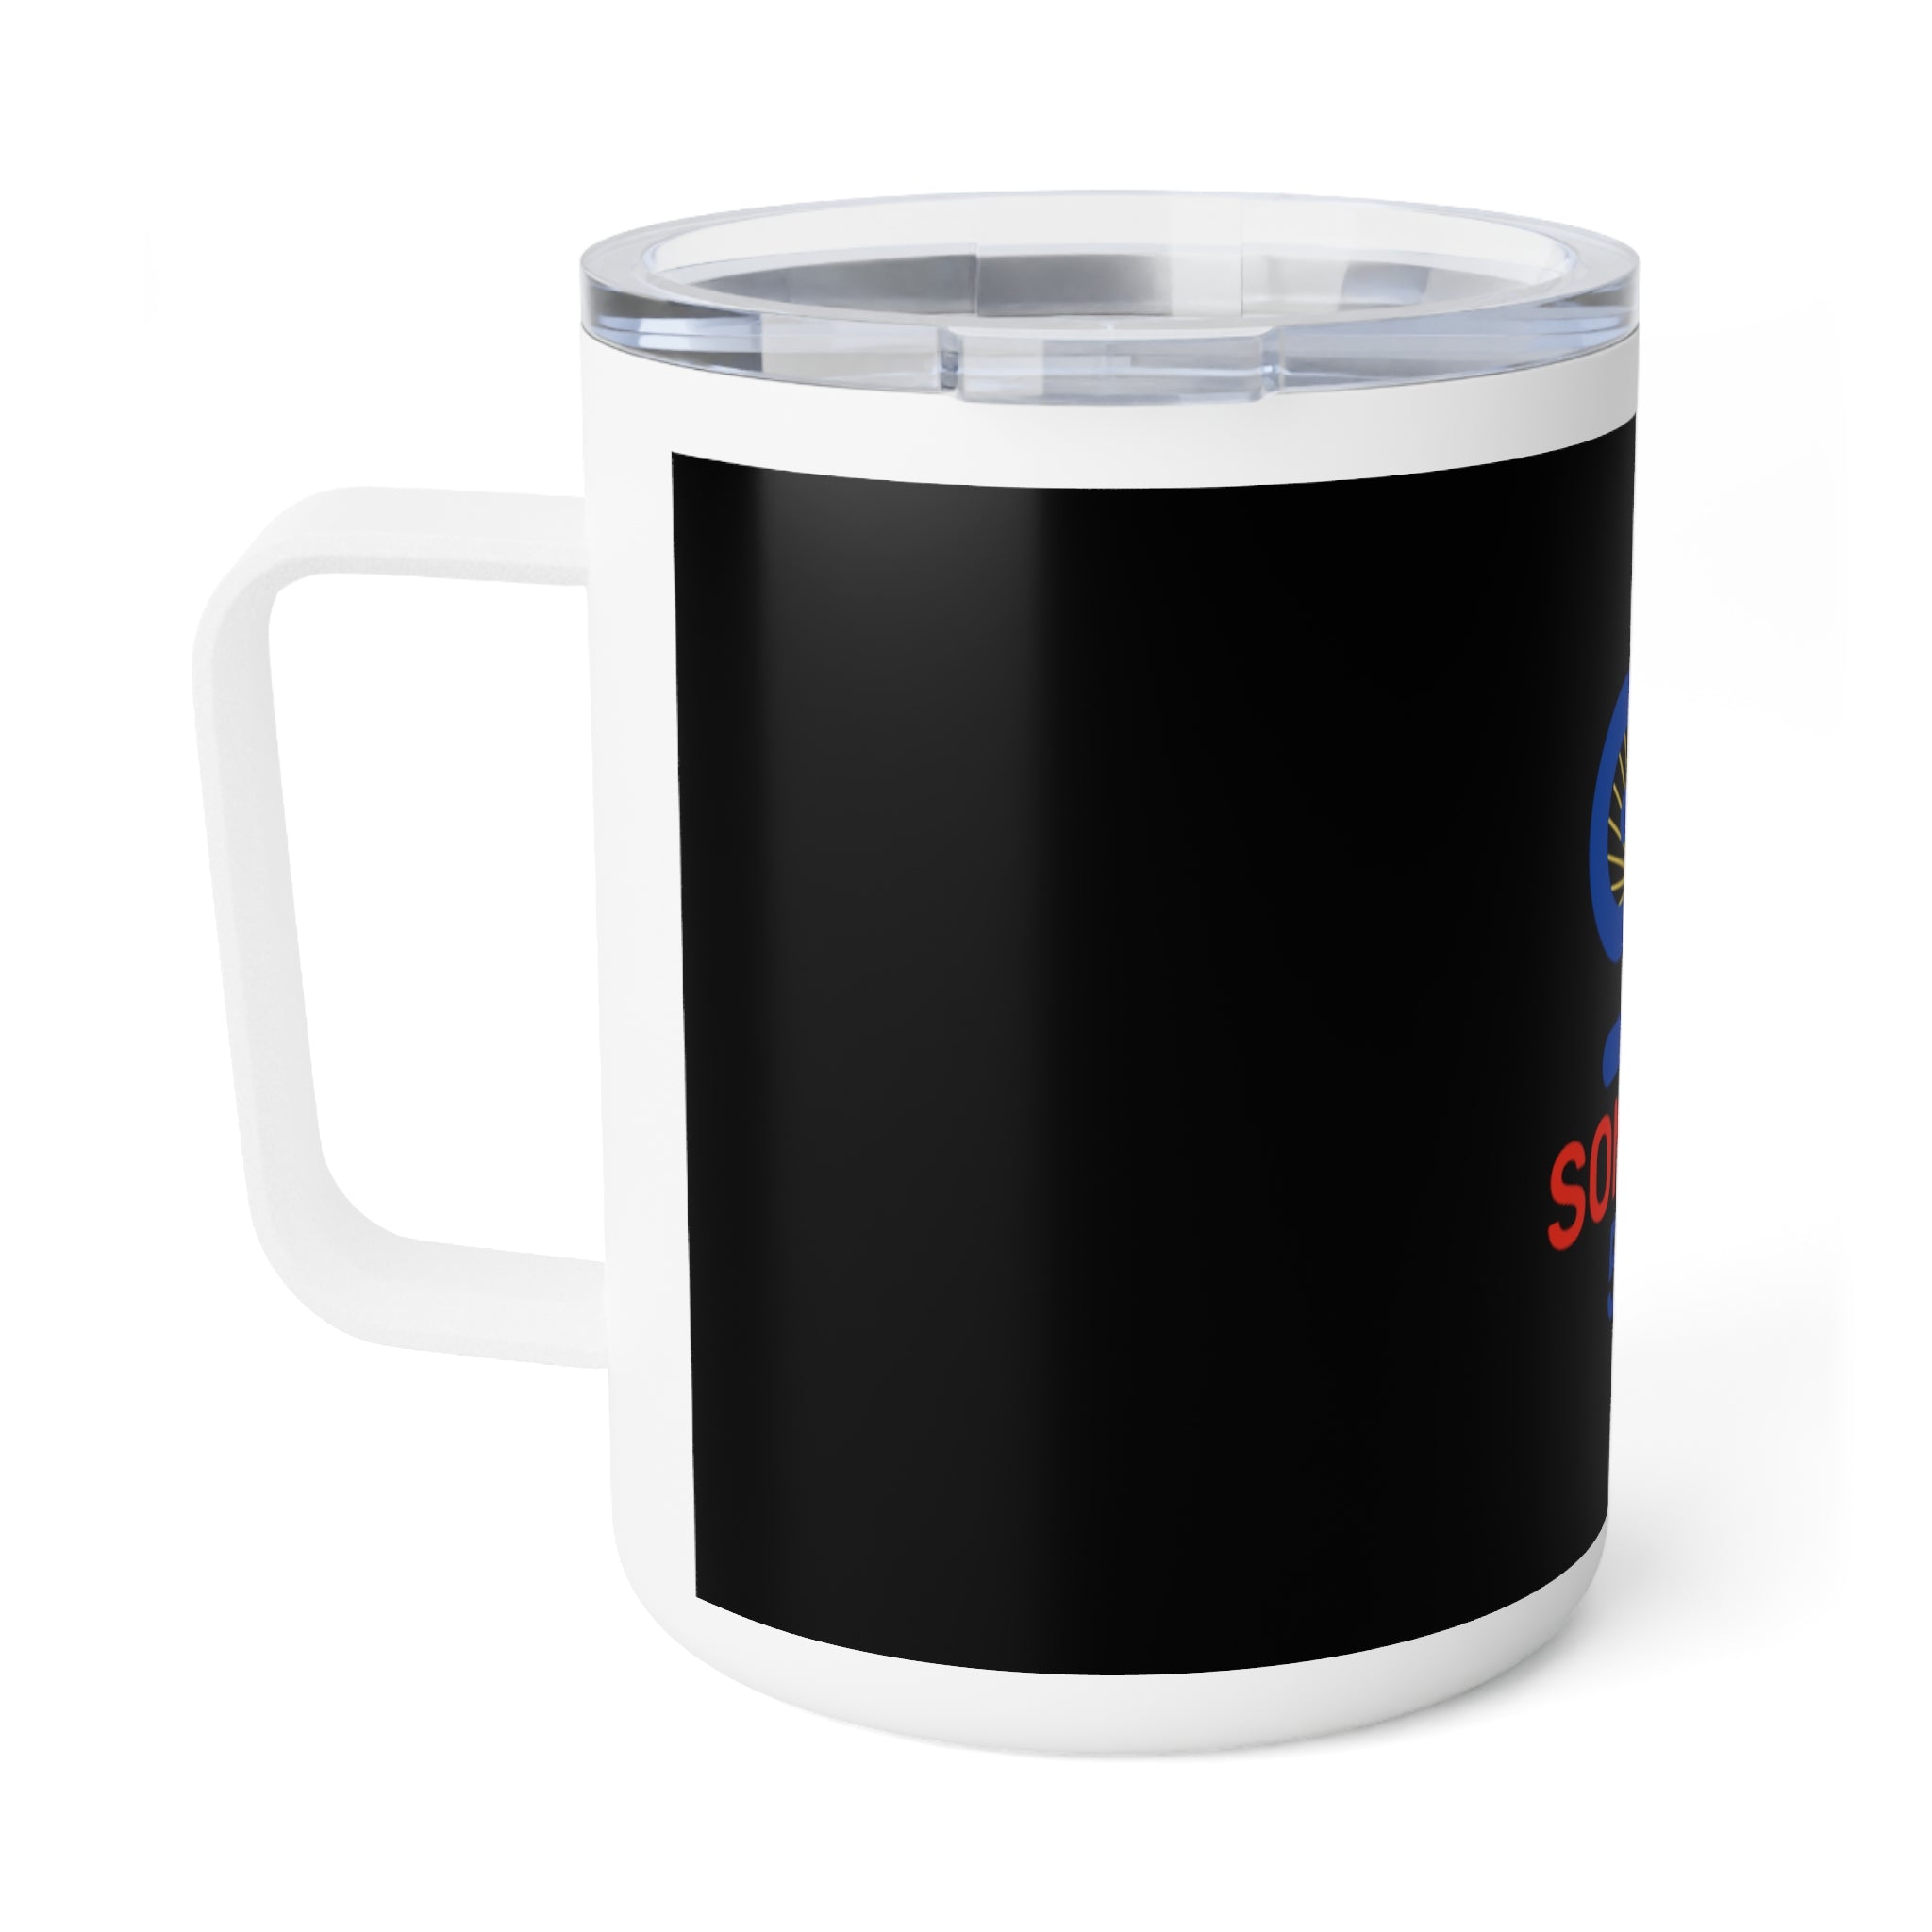 Sonhco 509 Coffee Mug Co., 10oz